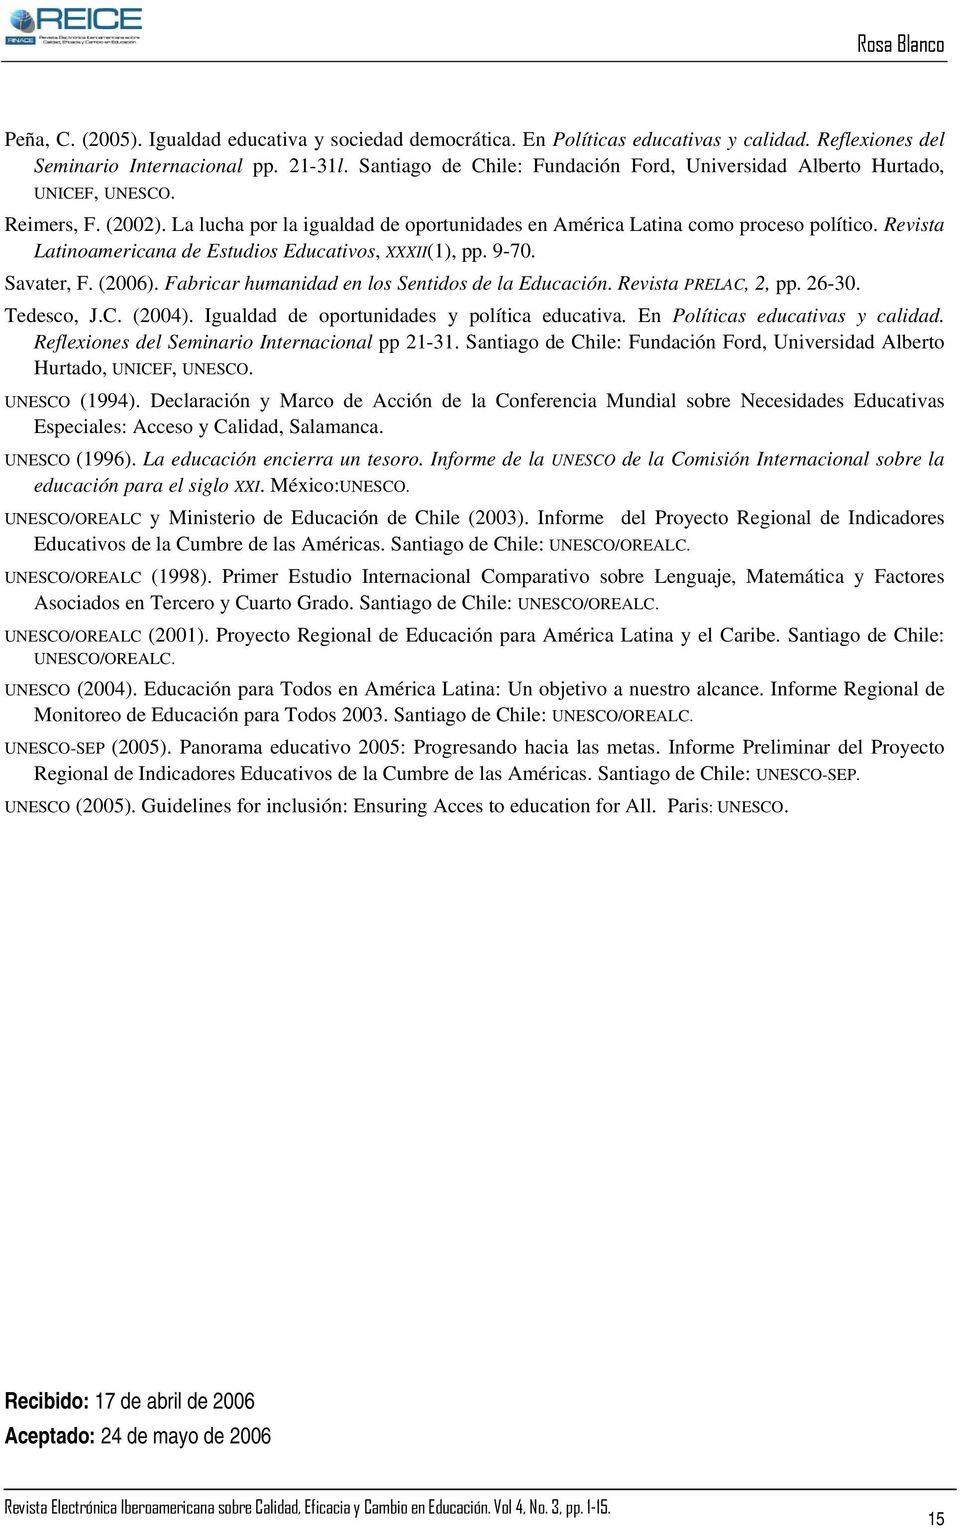 Revista Latinoamericana de Estudios Educativos, XXXII(1), pp. 9-70. Savater, F. (2006). Fabricar humanidad en los Sentidos de la Educación. Revista PRELAC, 2, pp. 26-30. Tedesco, J.C. (2004).